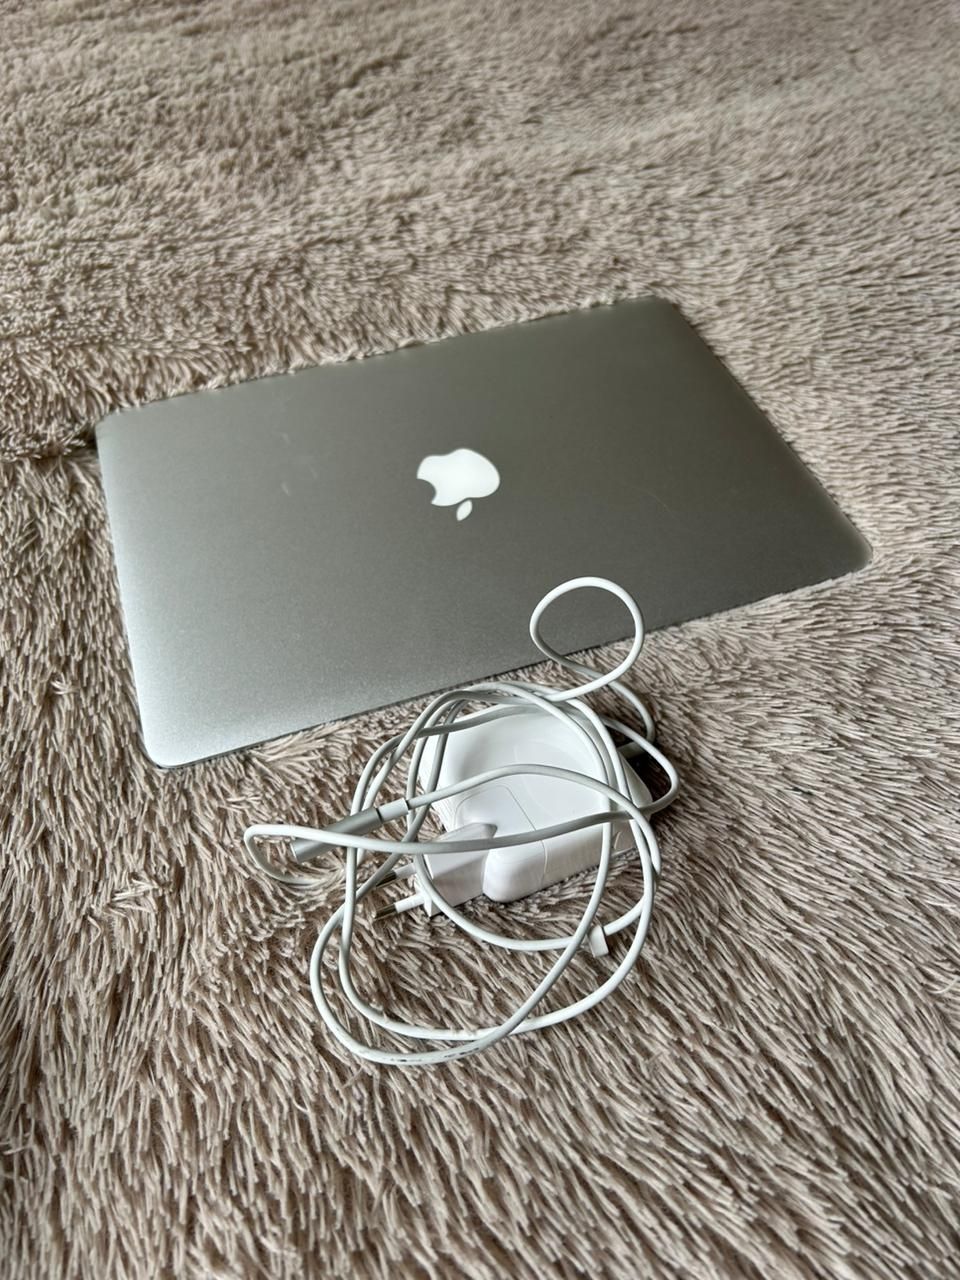 MacBook air MacBook